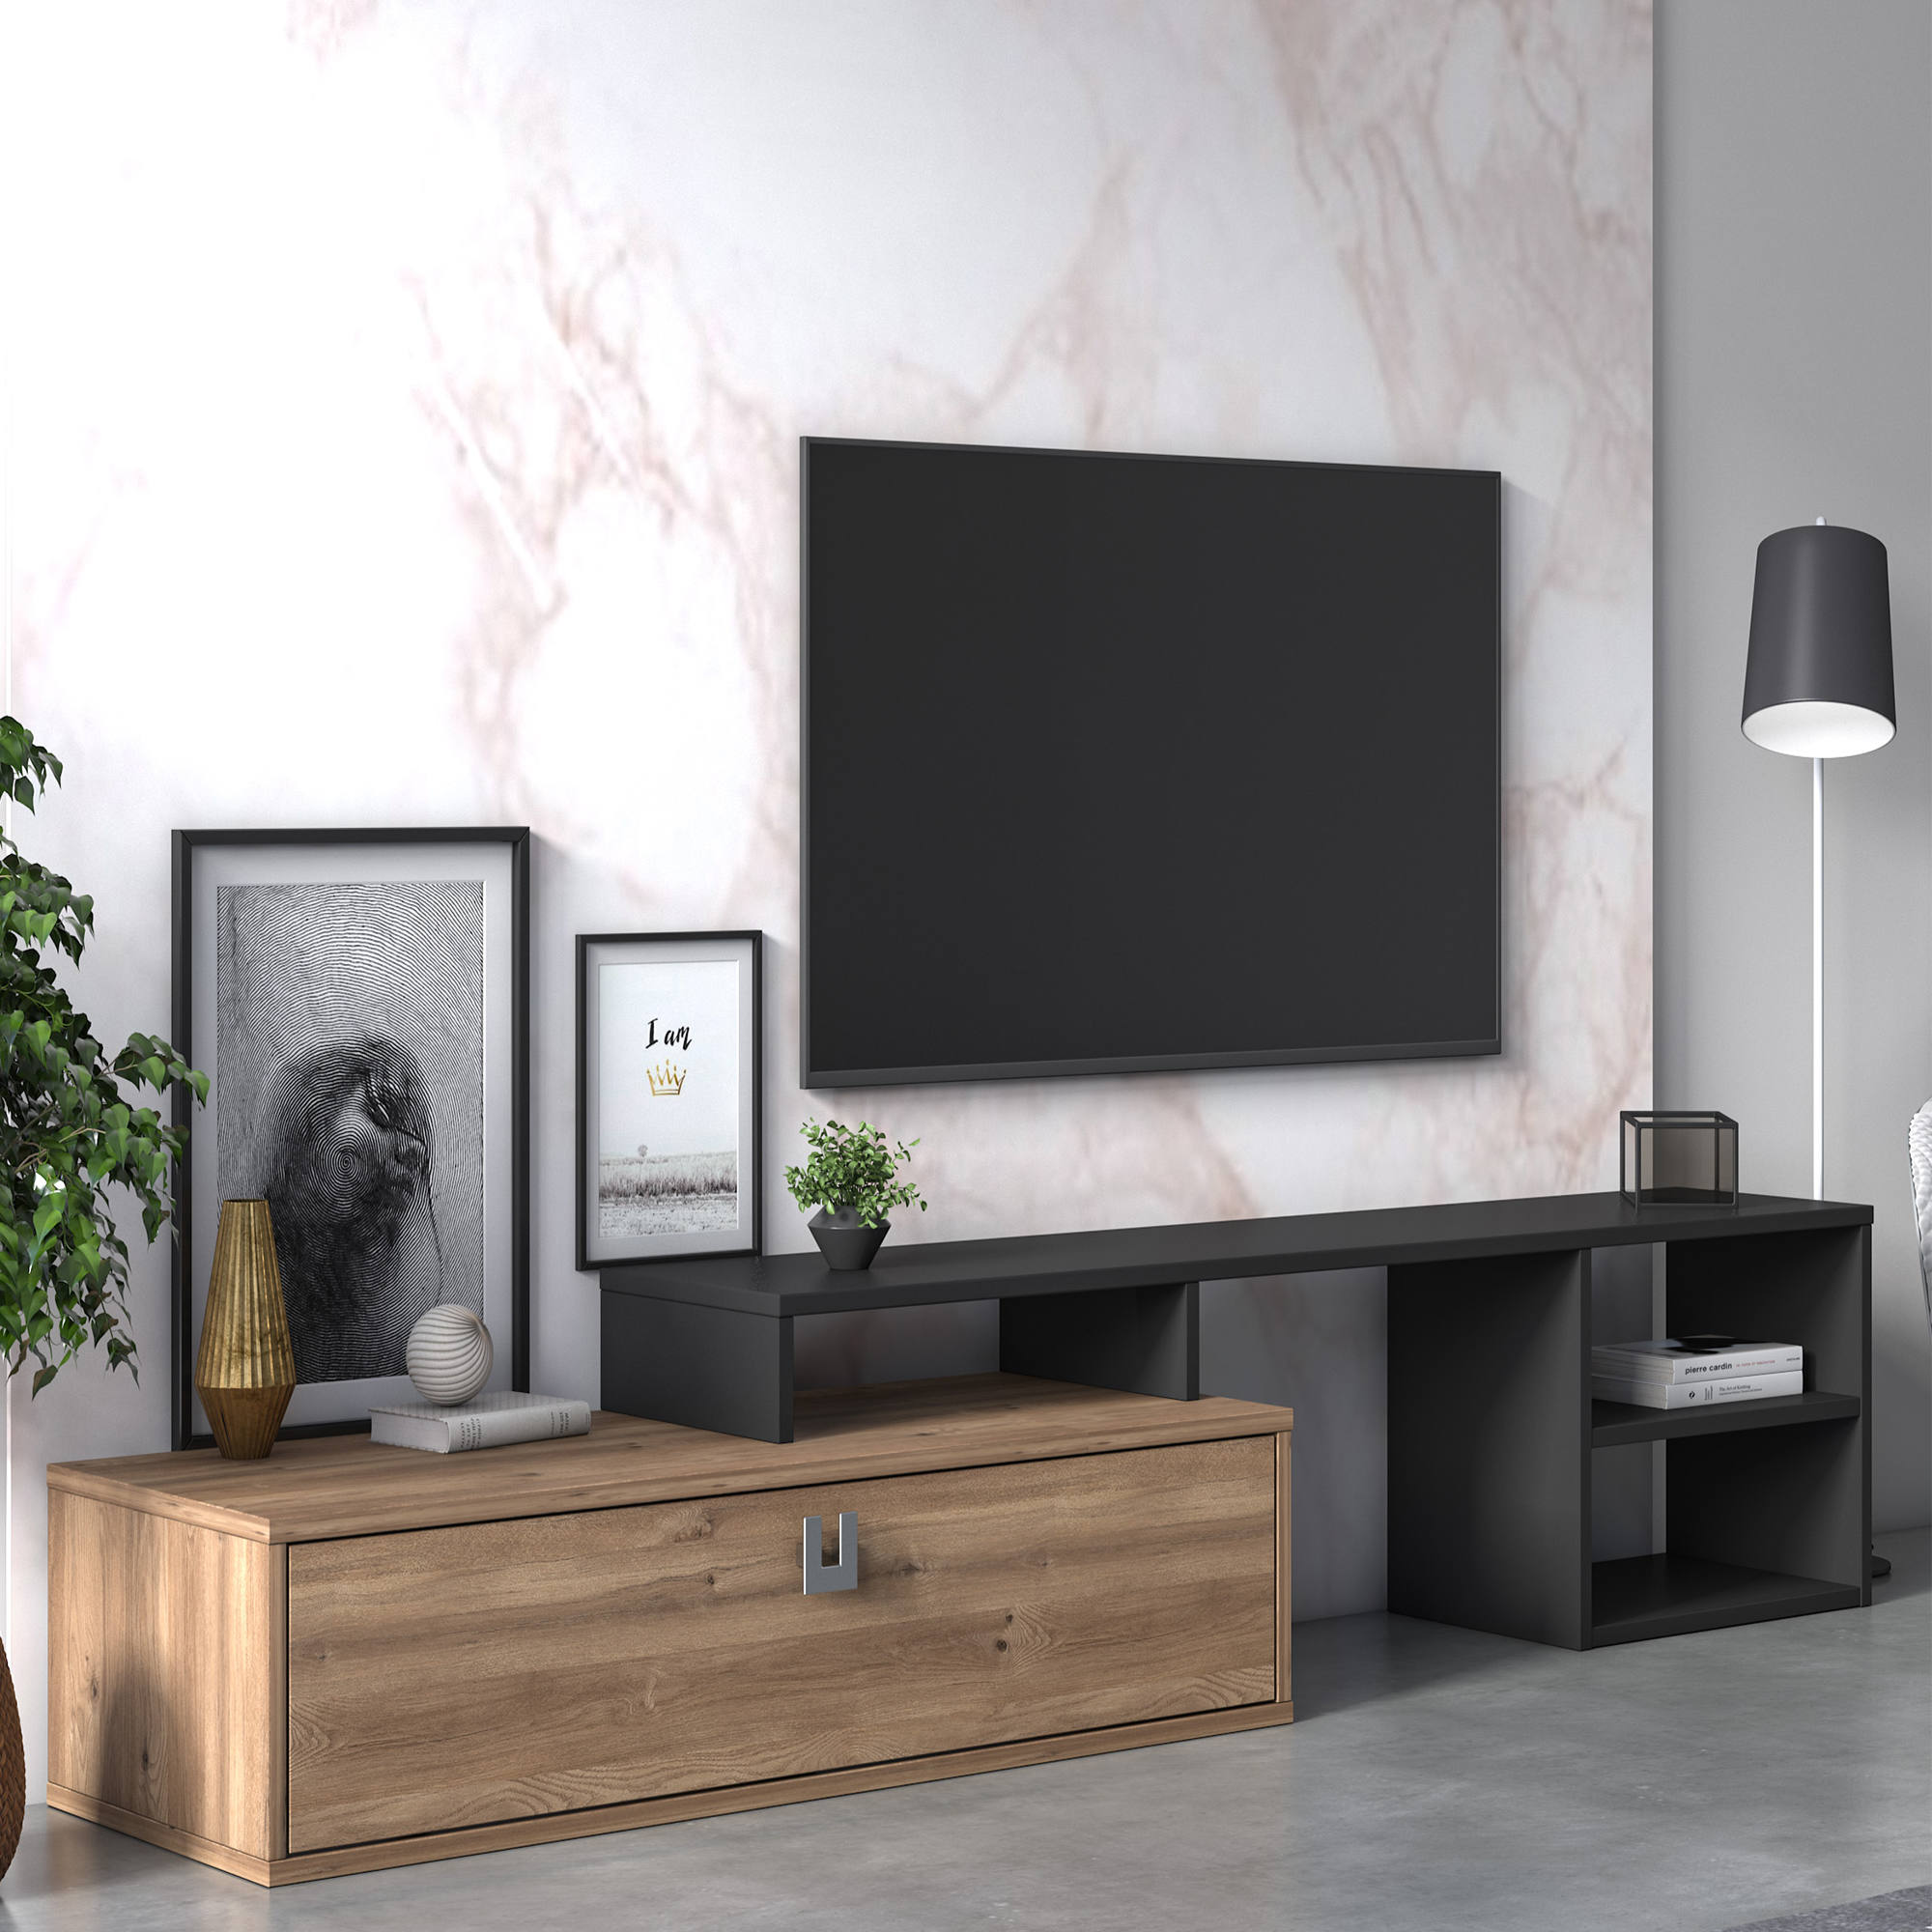 muebles bonitos Mobile TV sospeso Design Tobic Nero con luci LED Lettiemobili Anta a ribalta Orizzontale Lucida con Vetro Porta TV Larghezza: 160cm x Altezza: 30cm x profondità: 40 cm 